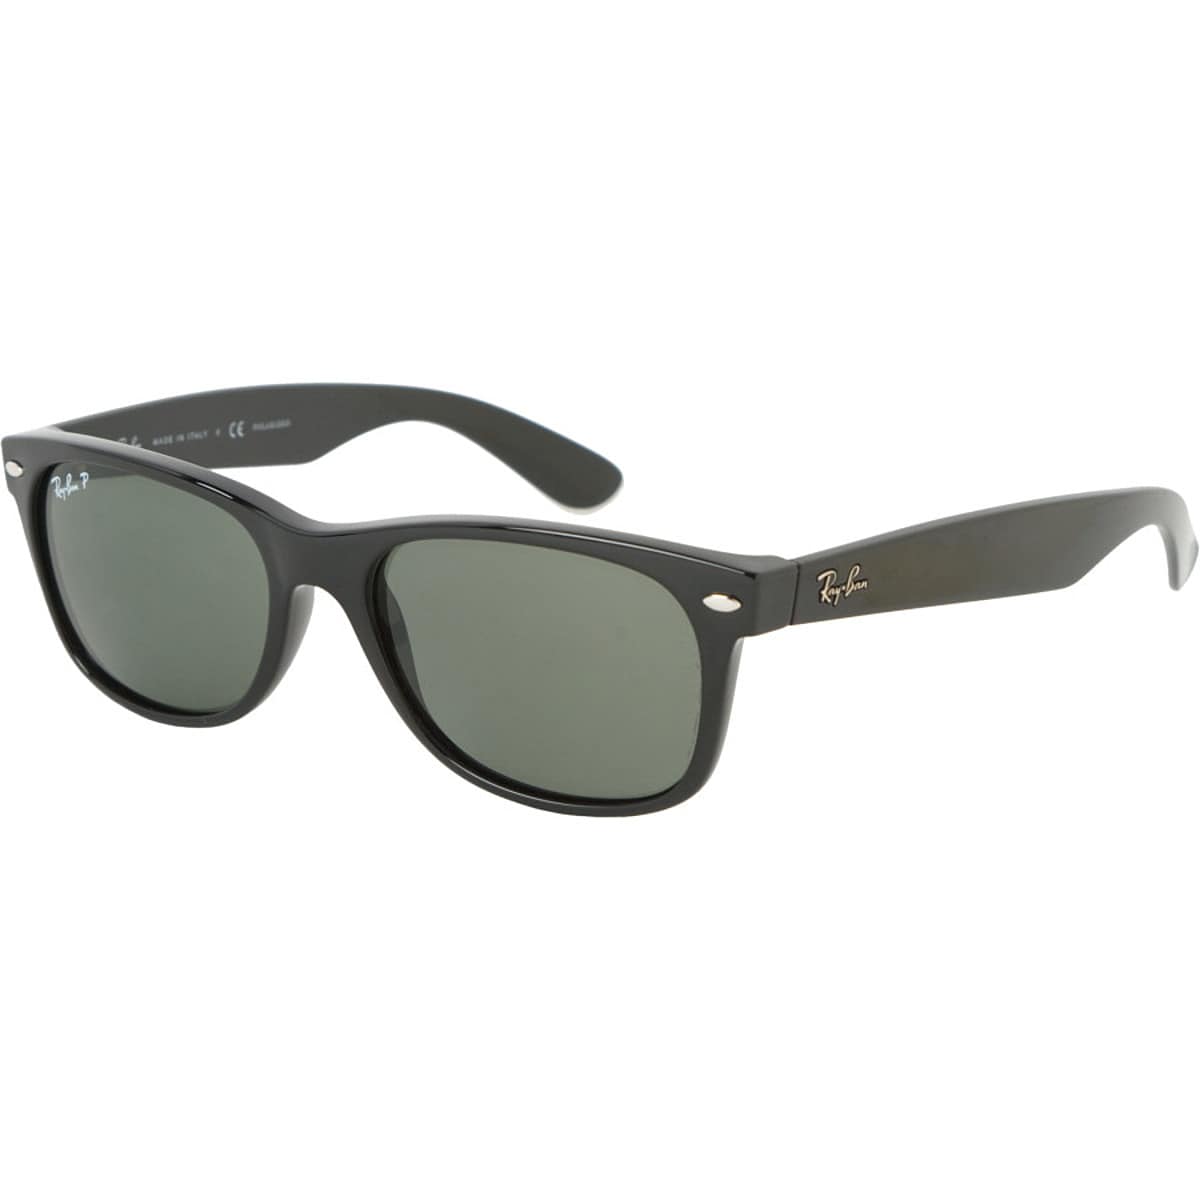 Новые поляризованные солнцезащитные очки wayfarer Ray-Ban, цвет black/crystal natural green фото